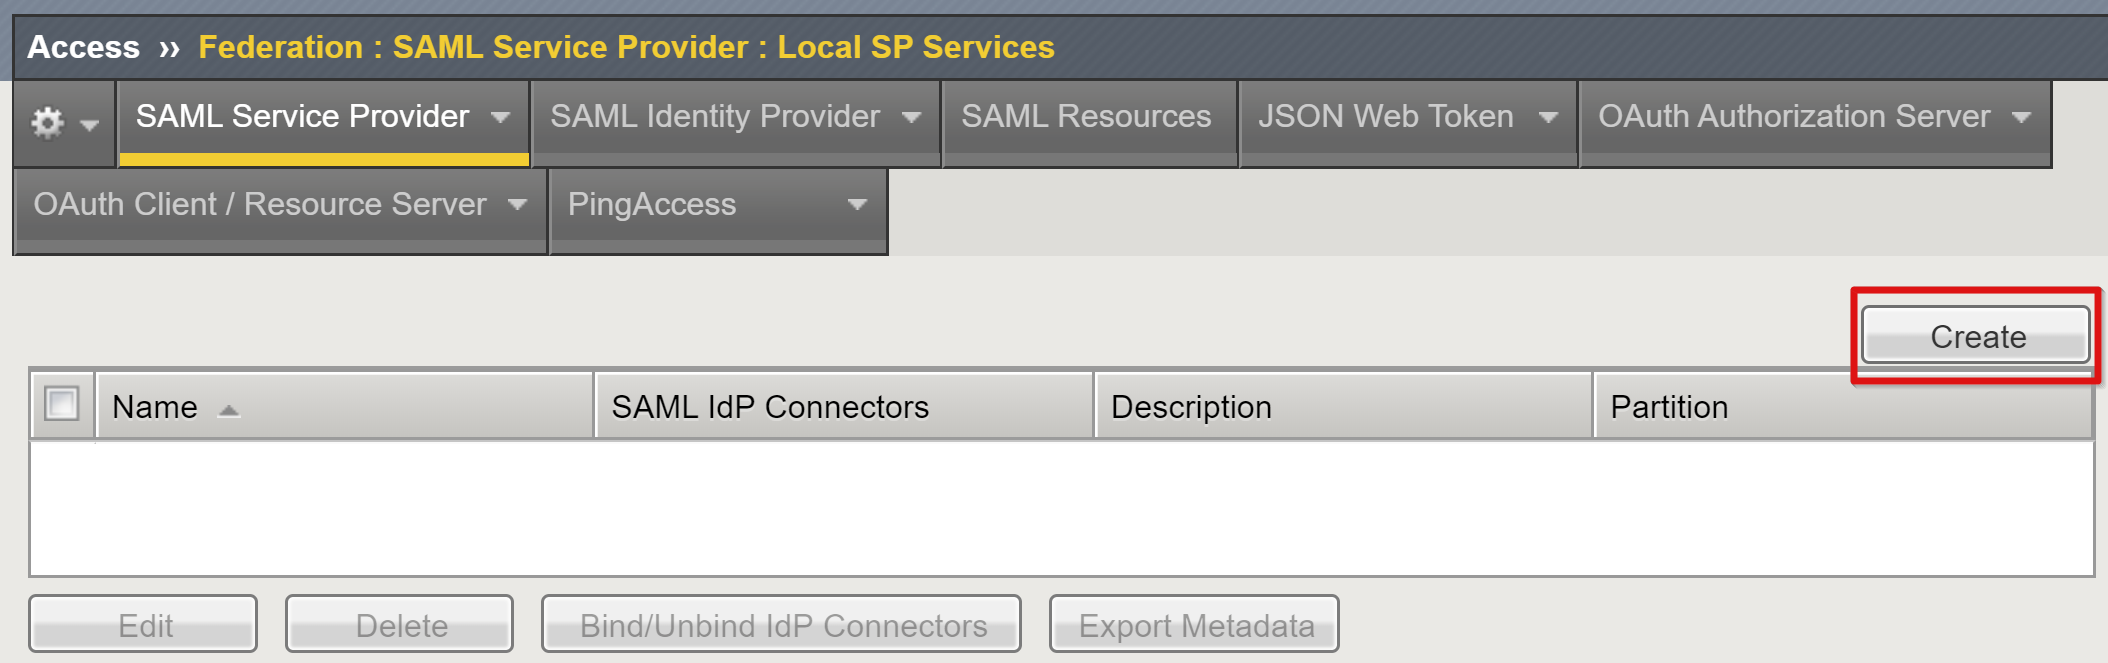 Captura de tela da opção Criar na página Serviços do SP Local.